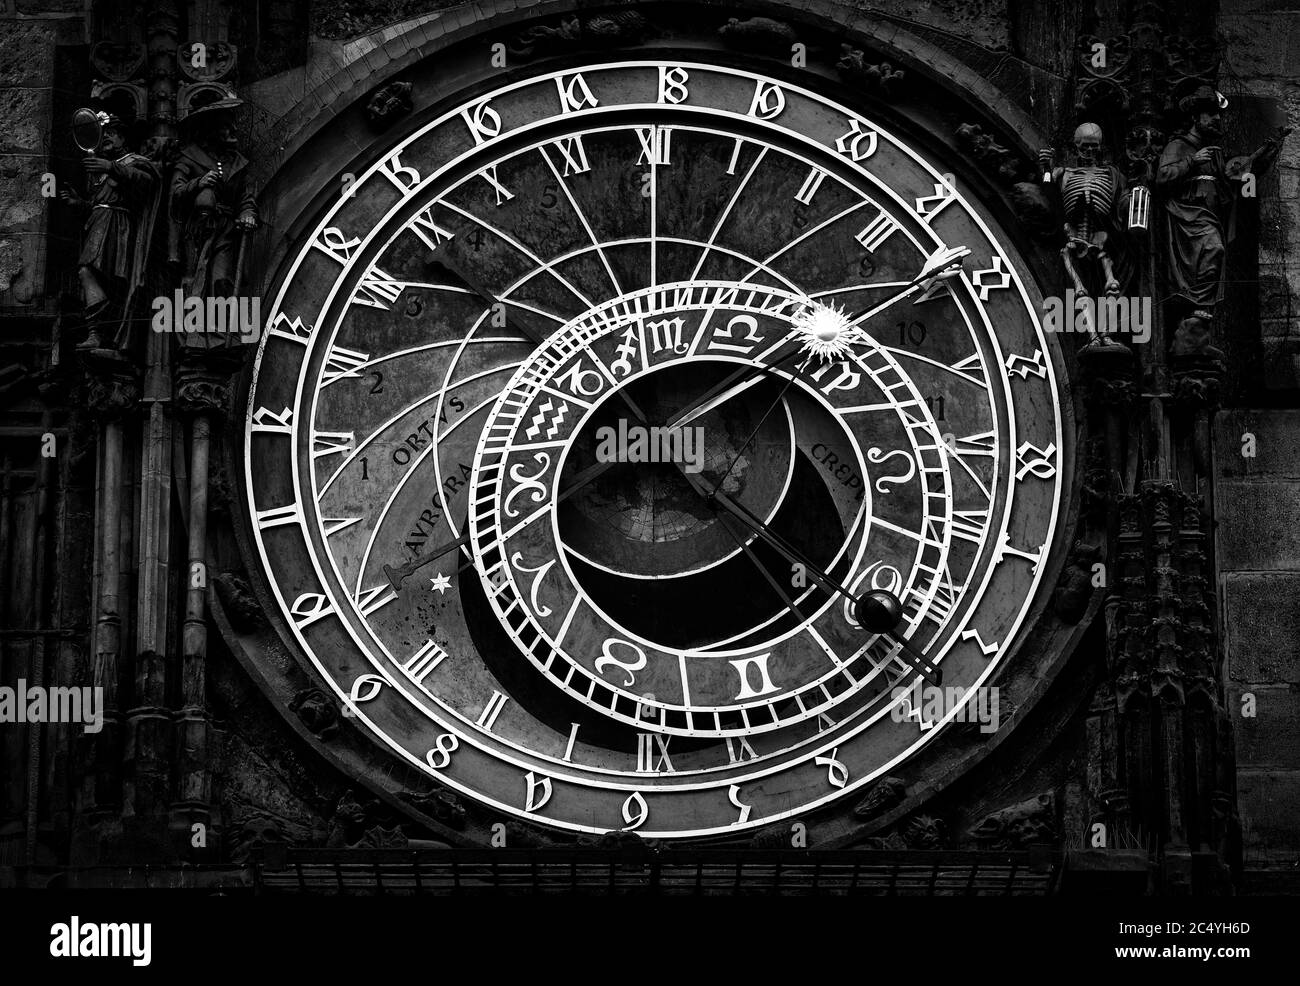 Historische mittelalterliche astronomische Uhr auf dem Altstädter Ring in Prag, Tschechische Republik Stockfoto